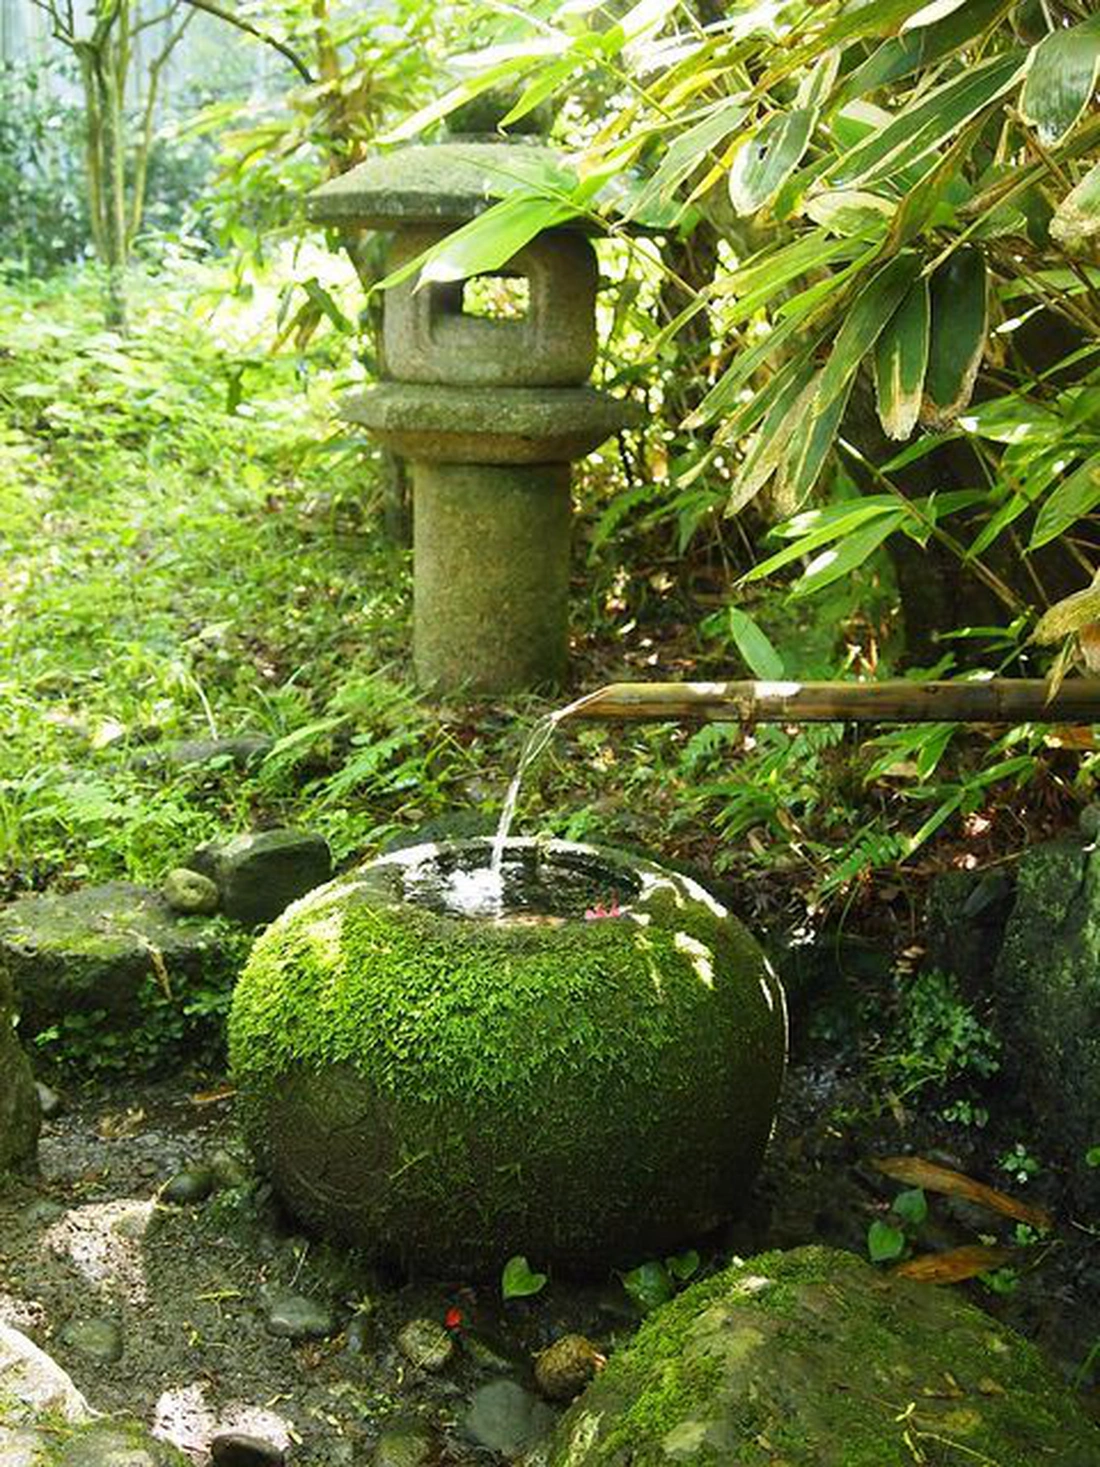 Moss in a Japanese garden